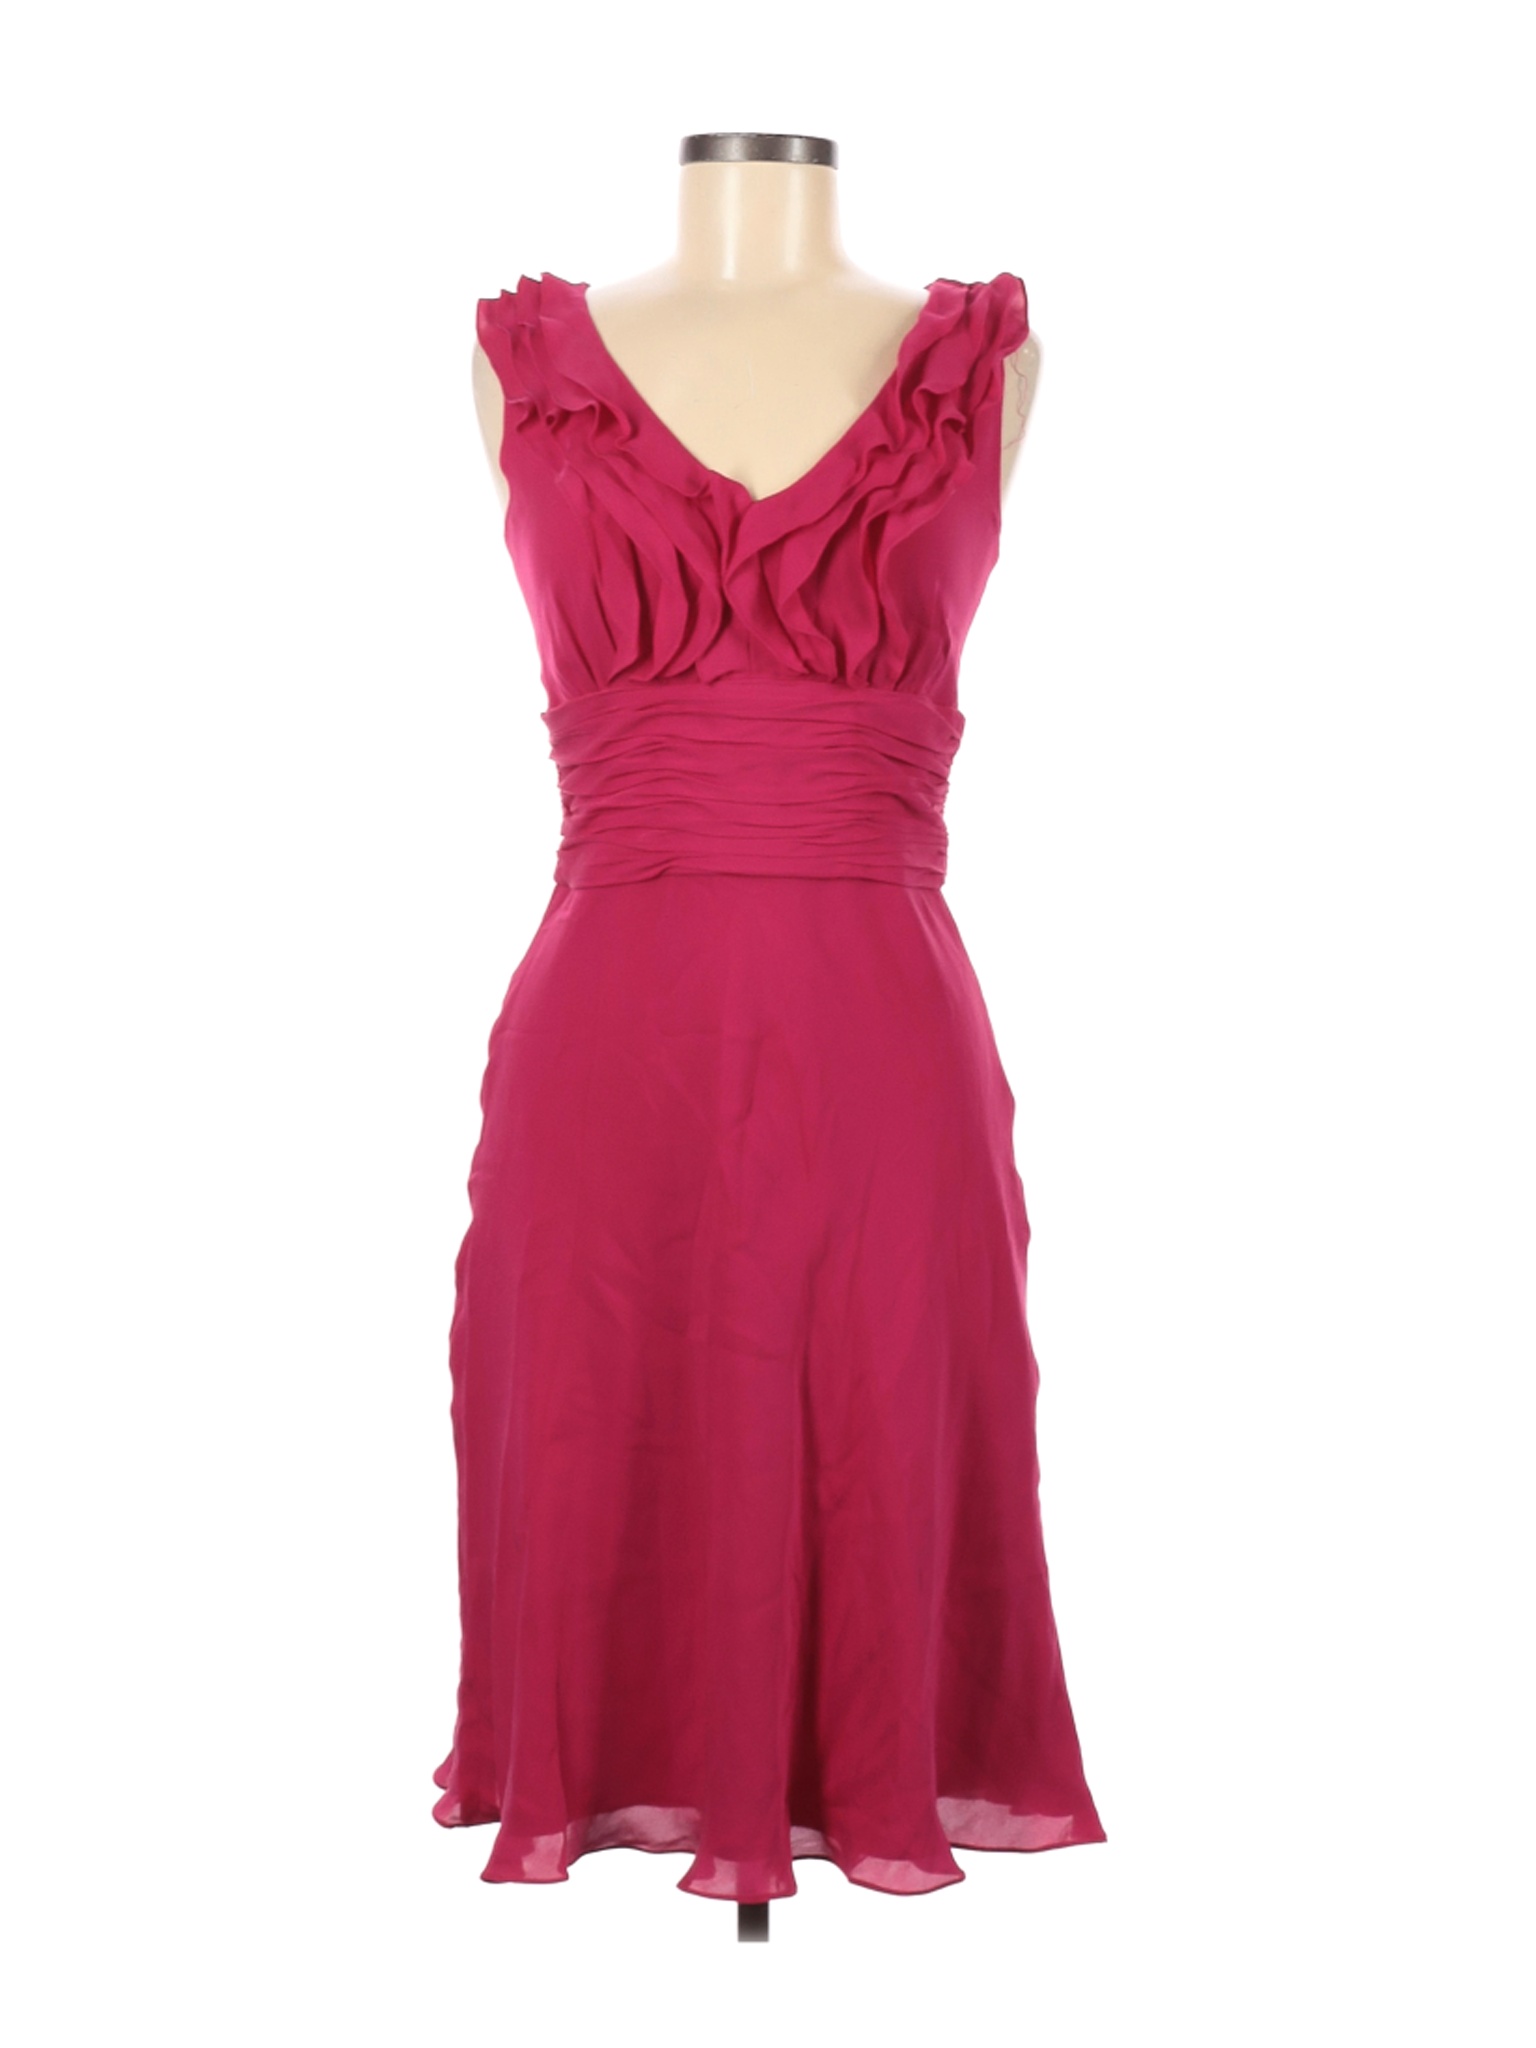 Antonio Melani Women Pink Cocktail Dress 4 | eBay